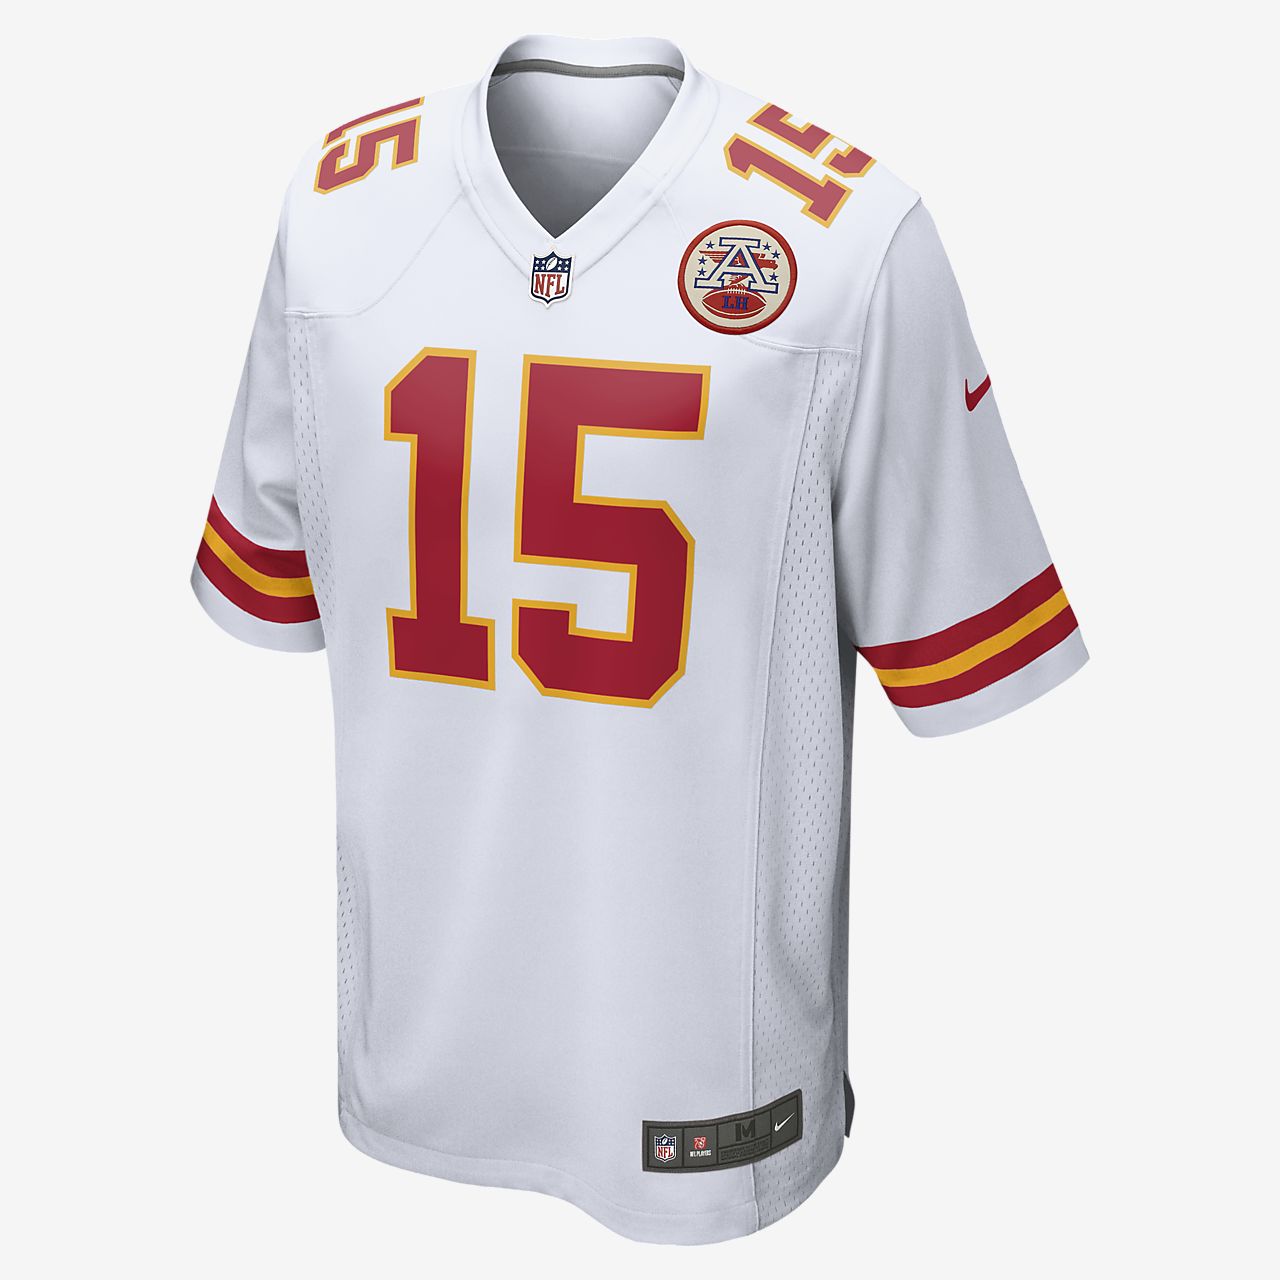 Camiseta de fútbol americano para hombre NFL Kansas City Chiefs Game (Patrick Mahomes). Nike.com